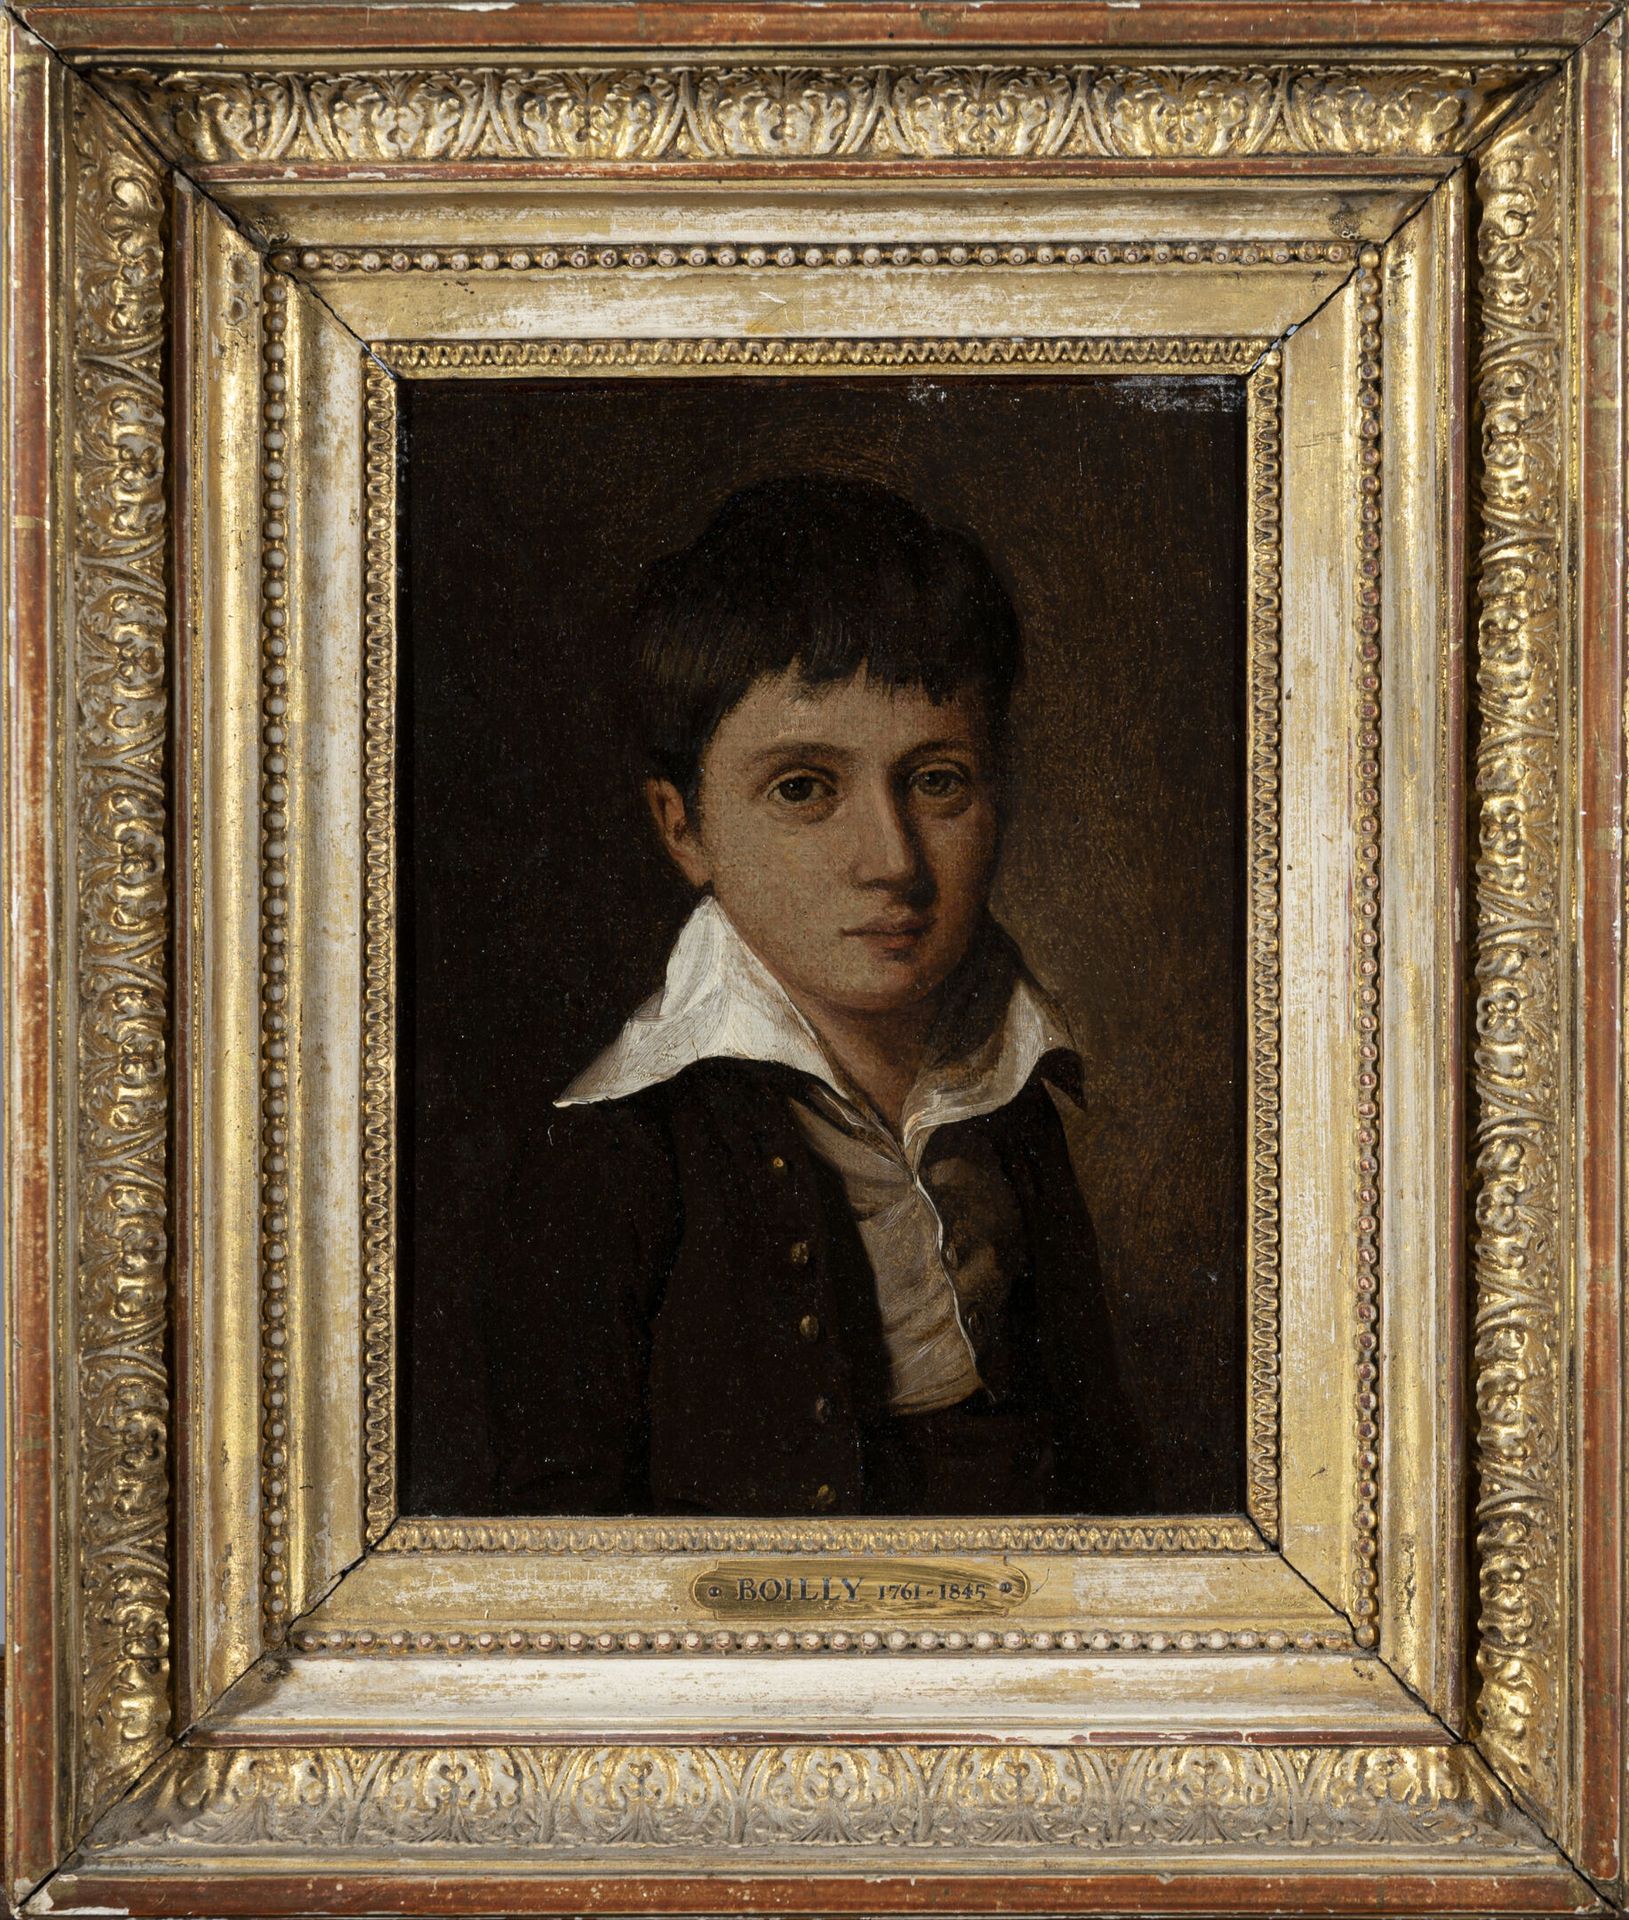 Null 路易-莱奥波利(1761-1843)
一个小男孩的画像
布面油画，有内衬
H.22厘米宽、17厘米高VS
磨损的
原有帝国时期的木质和镀金灰泥框架

&hellip;